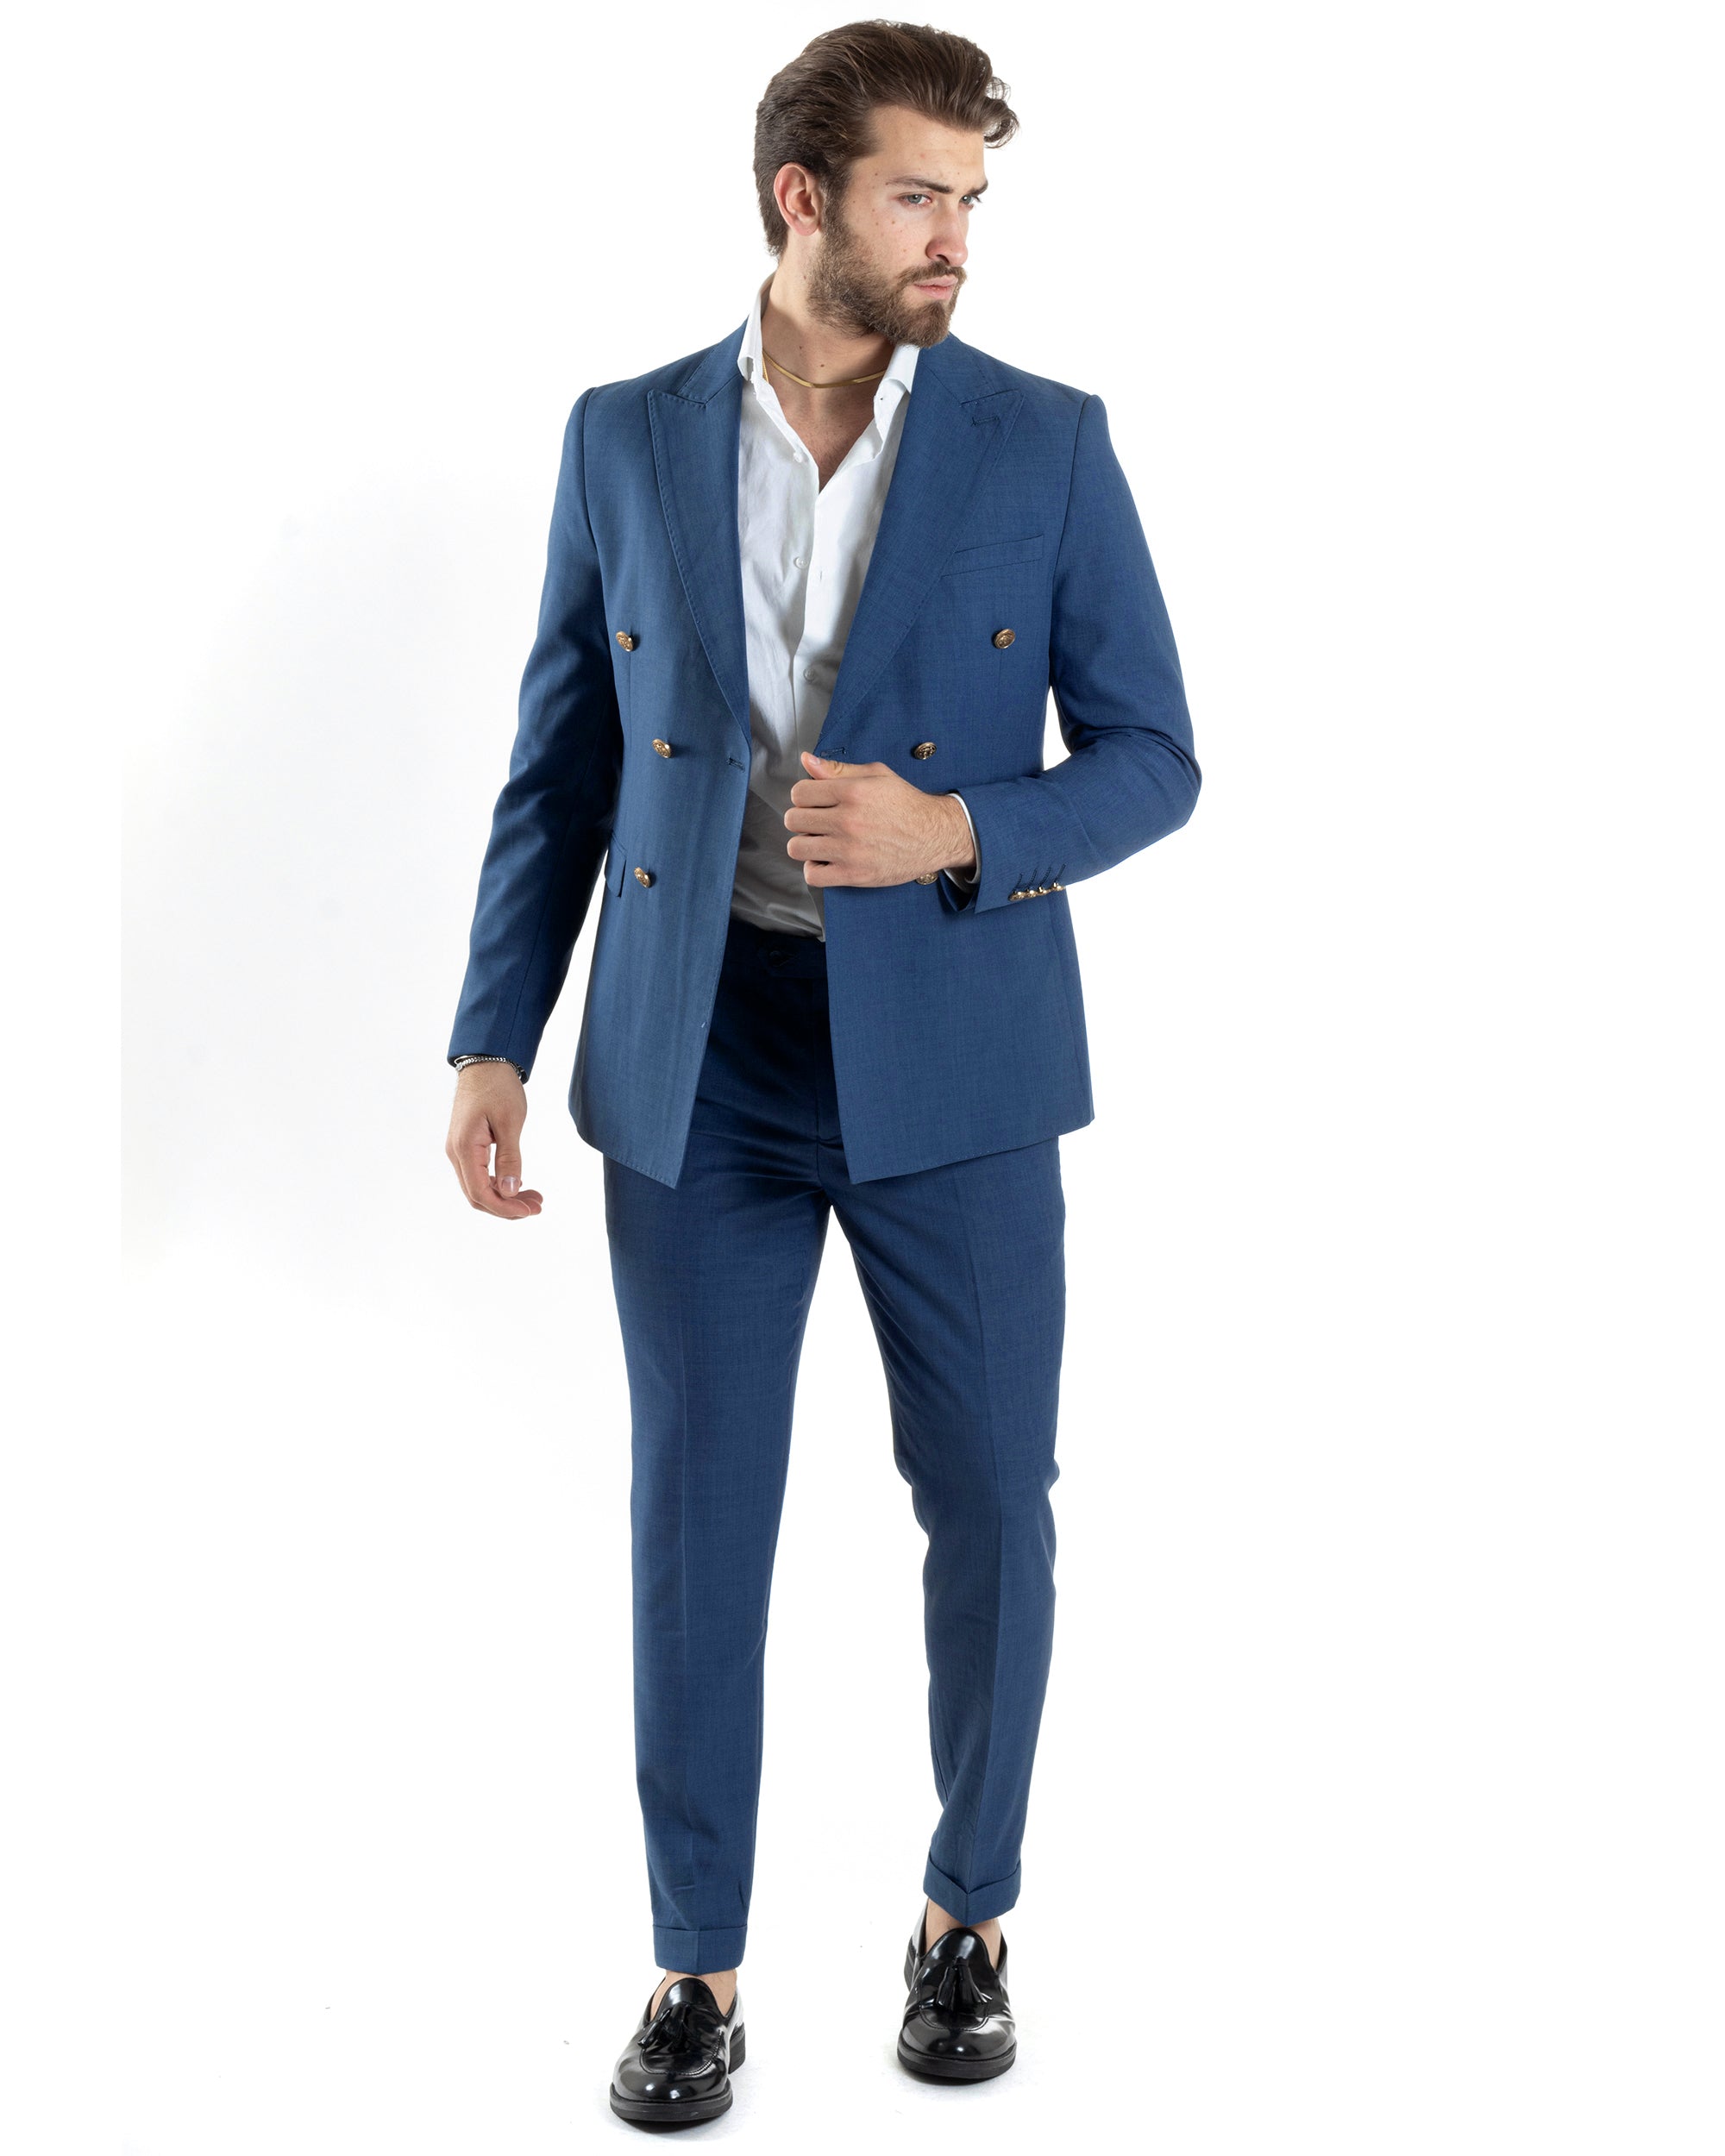 Abito Uomo Doppiopetto Vestito Completo Giacca Pantaloni Bottoni Metallo Blu Melangiato Elegante Casual GIOSAL-AE1056A